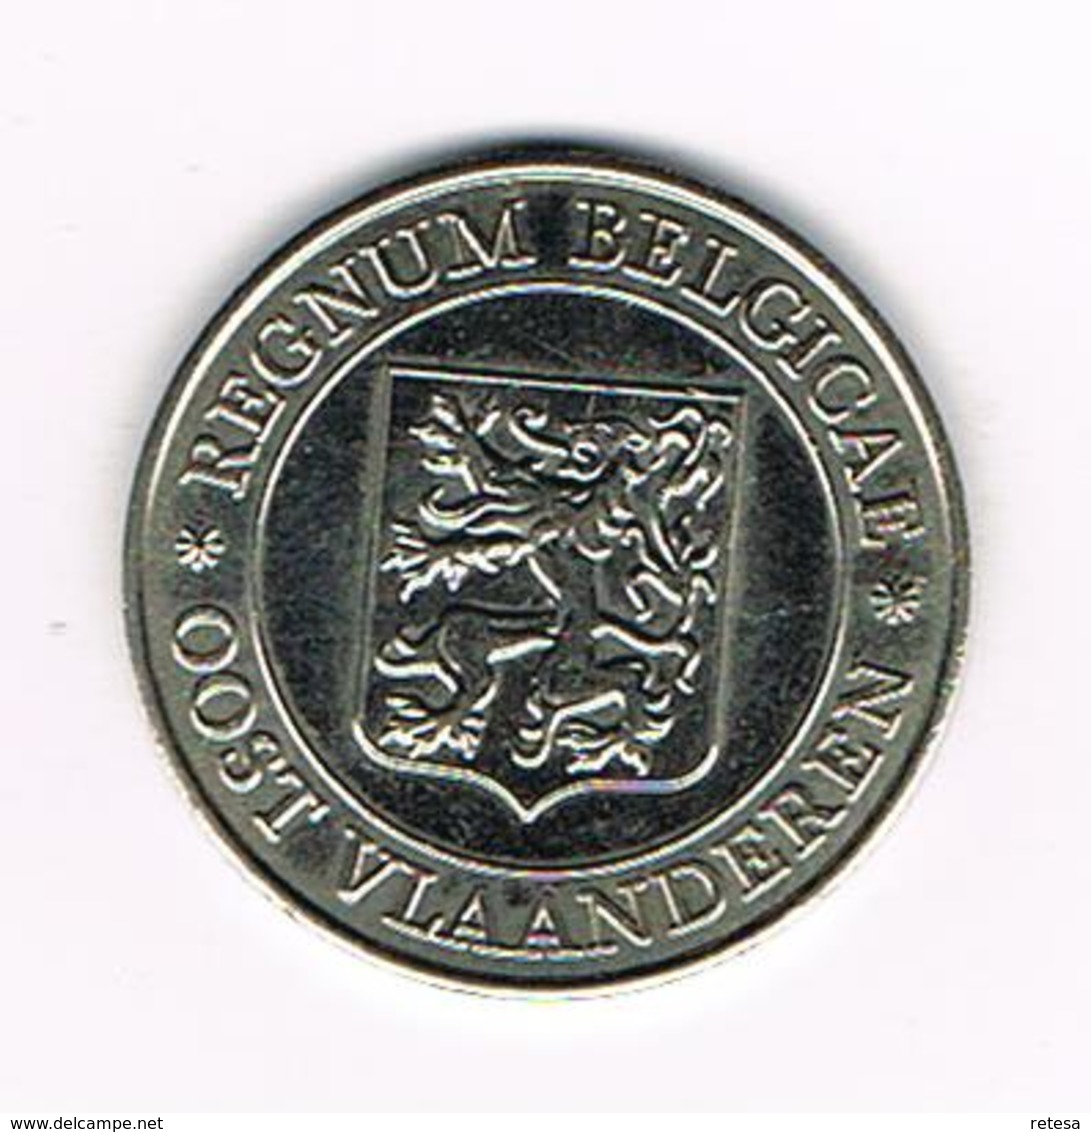 // PENNING  DOMINI EST REGNUM  REGNUM BELGICALE  OOST VLAANDEREN 1981 - 3.000 EX. - Pièces écrasées (Elongated Coins)